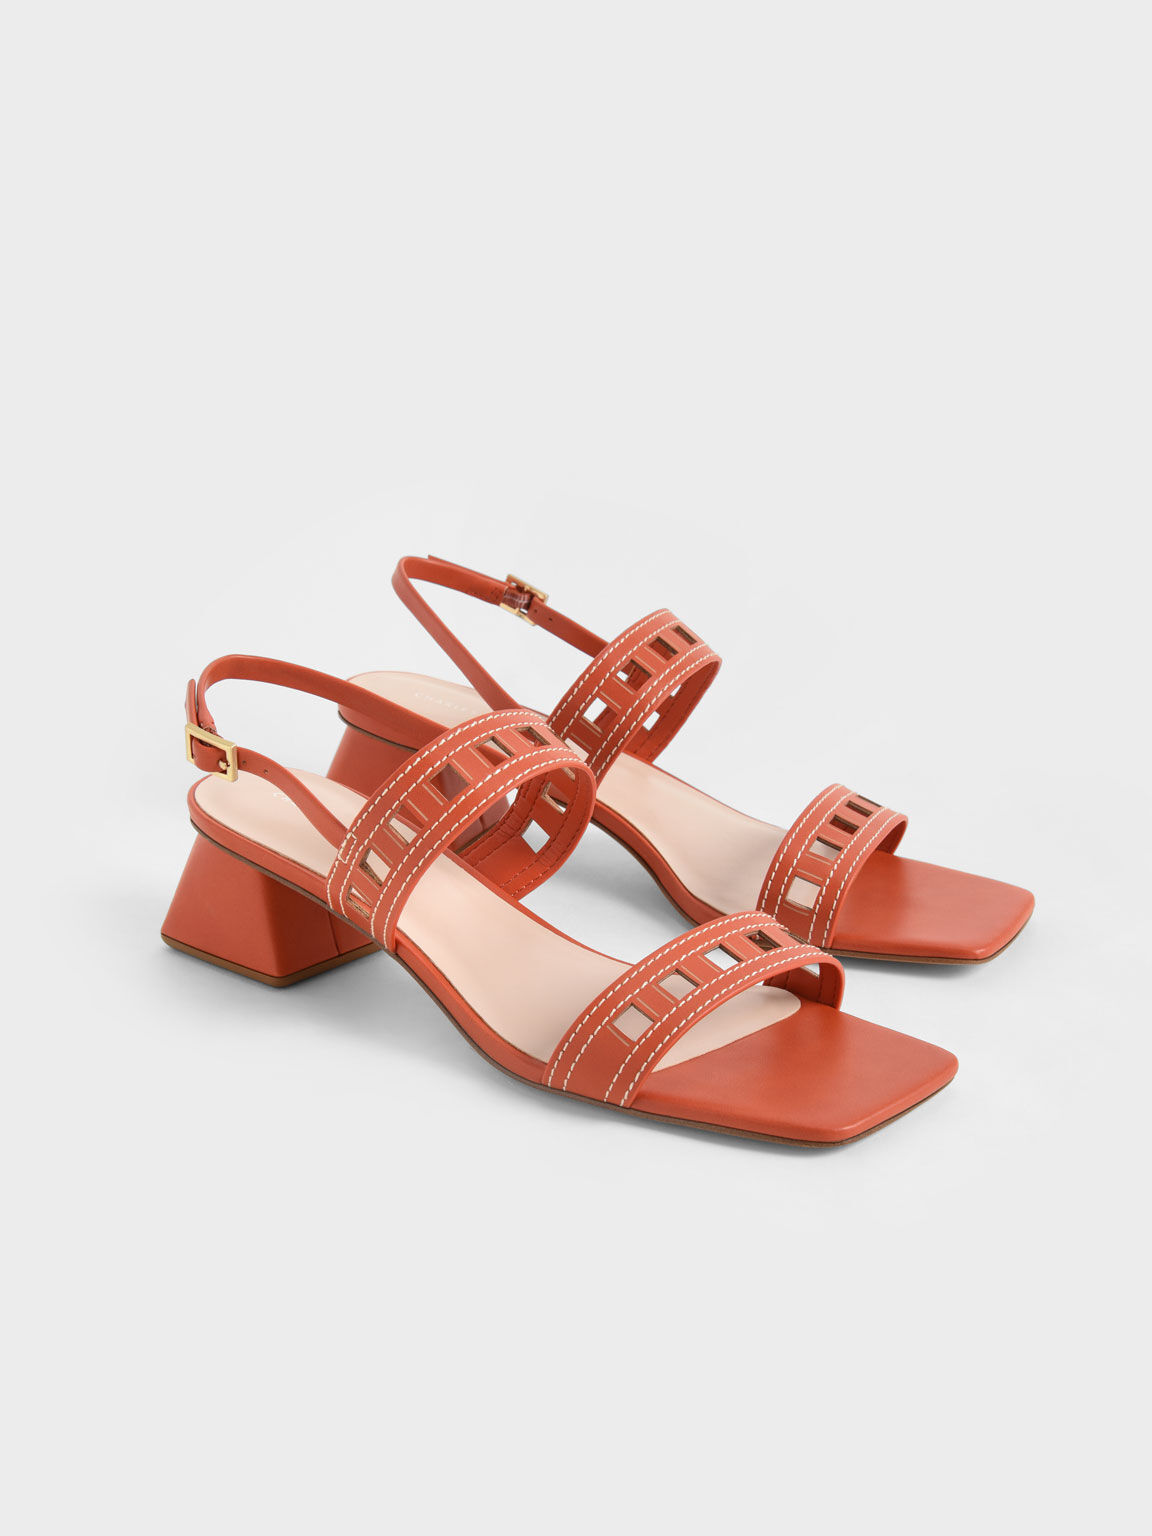 Cut-Out Heeled Slingback Sandals, Orange, hi-res